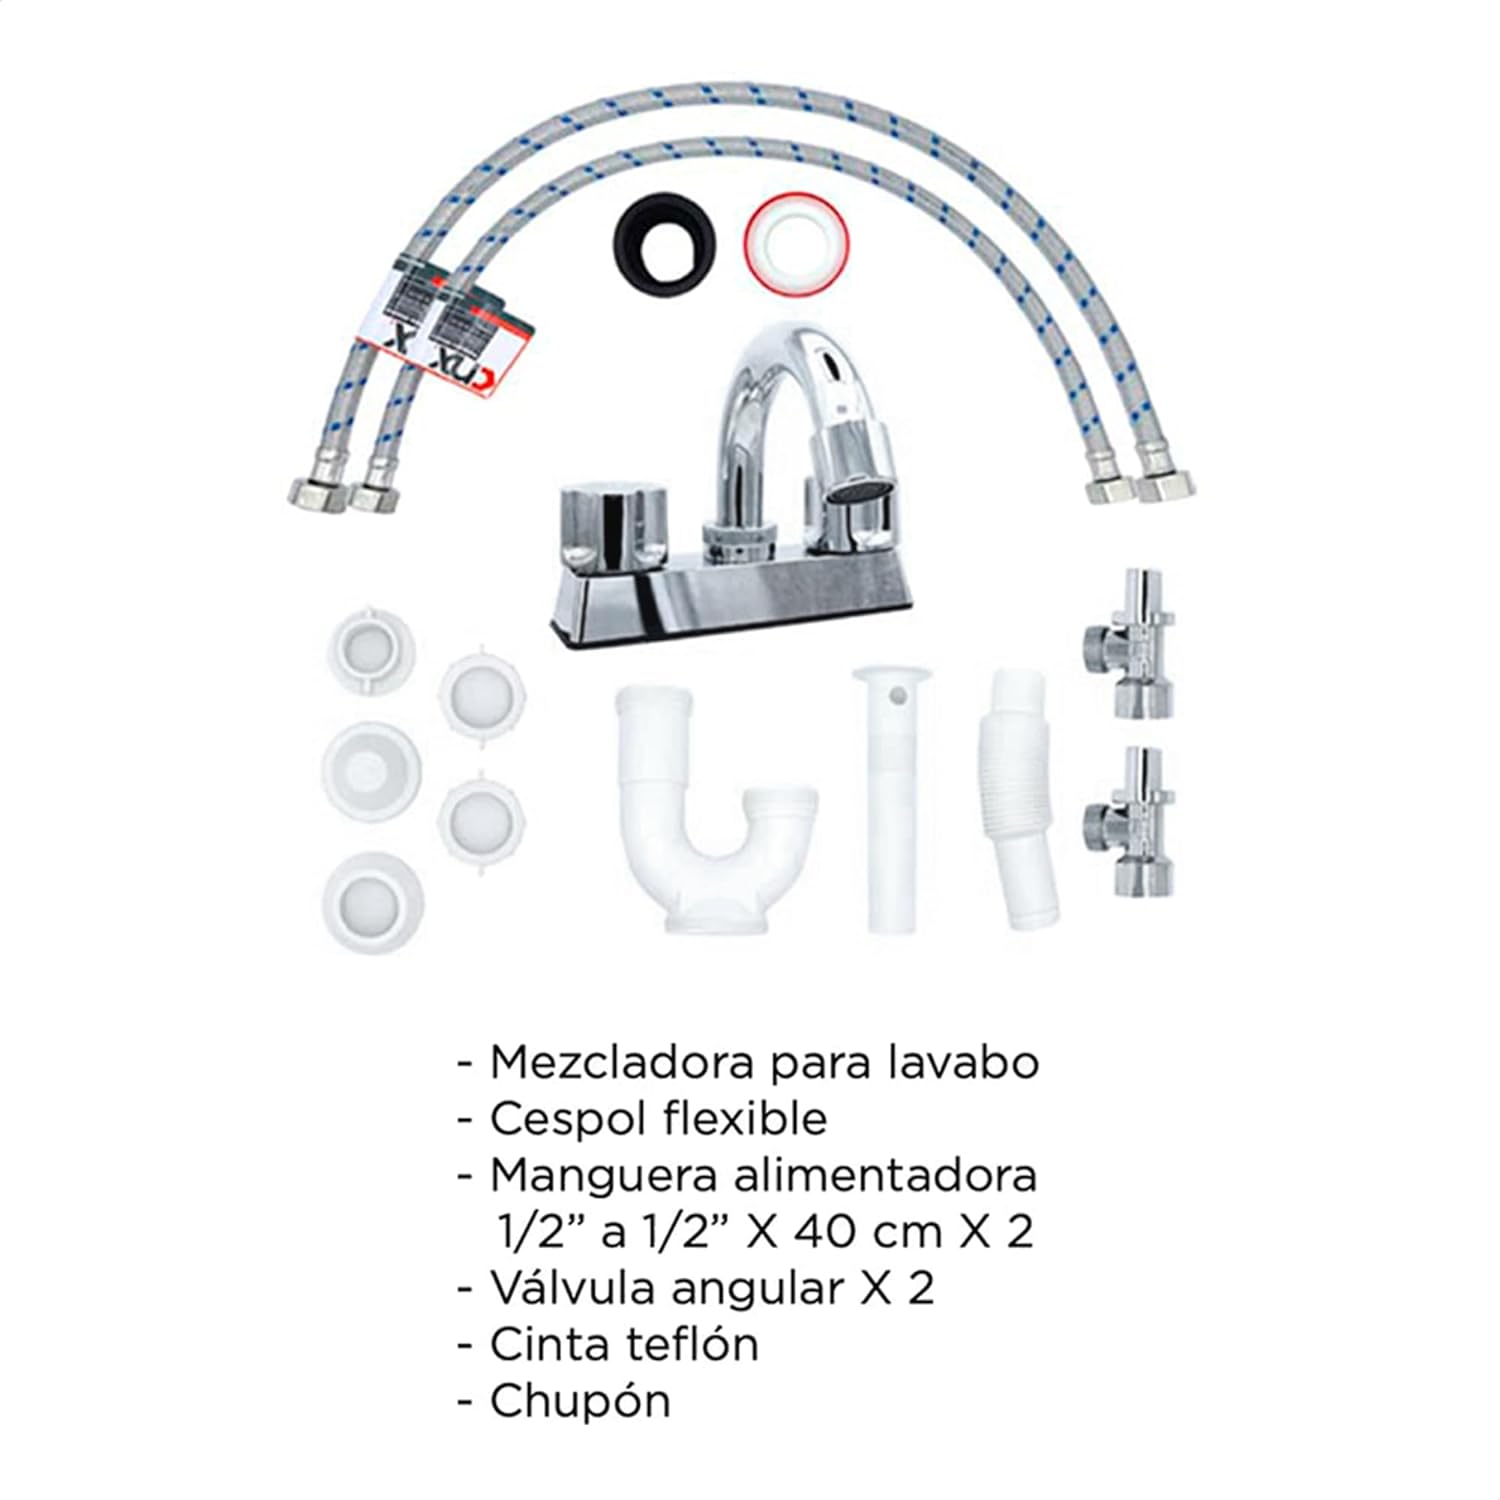  CNX Mezcladora Cromada para Lavabo, con kit de instalación (Incluye: 2x Mangueras, 1x Empaque, 2x Válvulas ángulares, 1x Trampa, 1x Mezcladora)